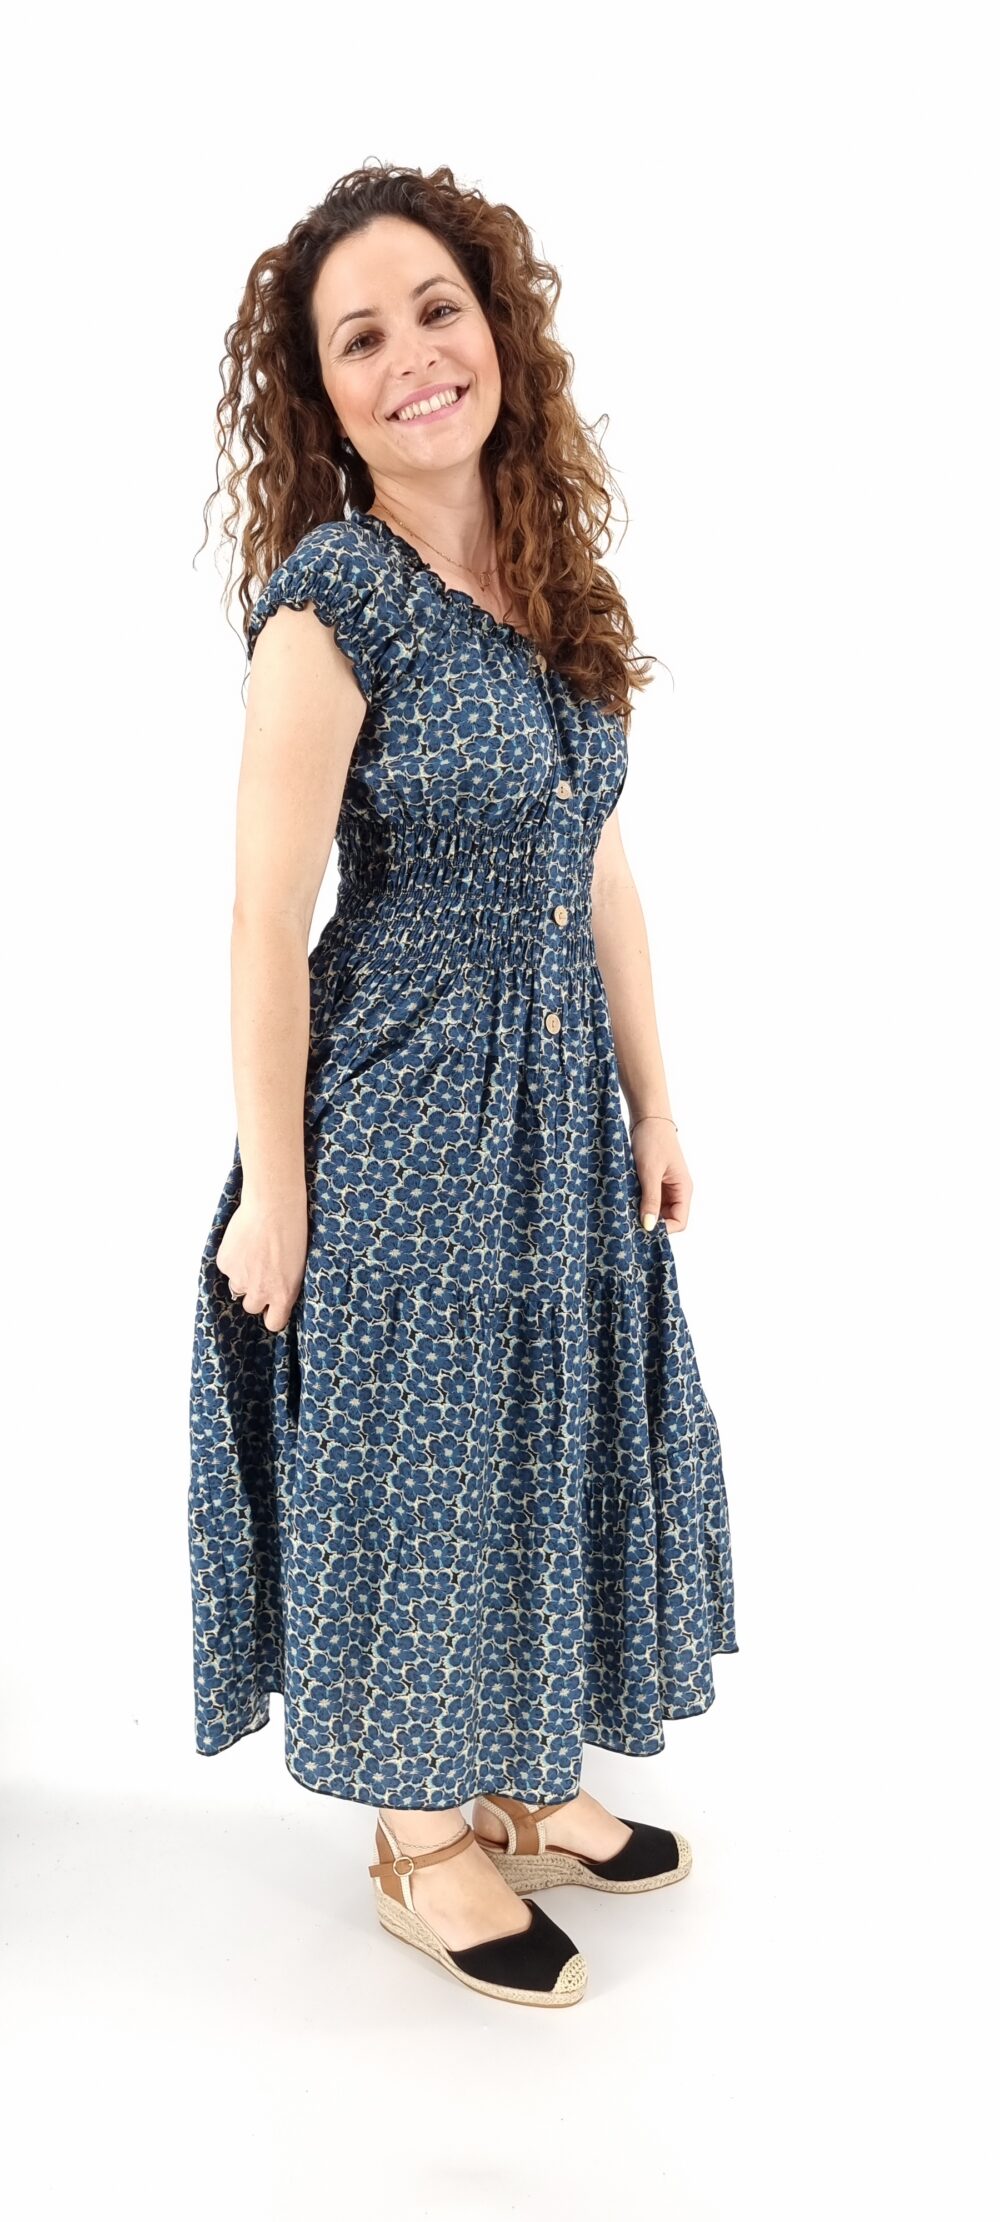 Φόρεμα φλοράλ midi με σφιγγοφωλιά και διακοσμητικά κουμπιά μπλε